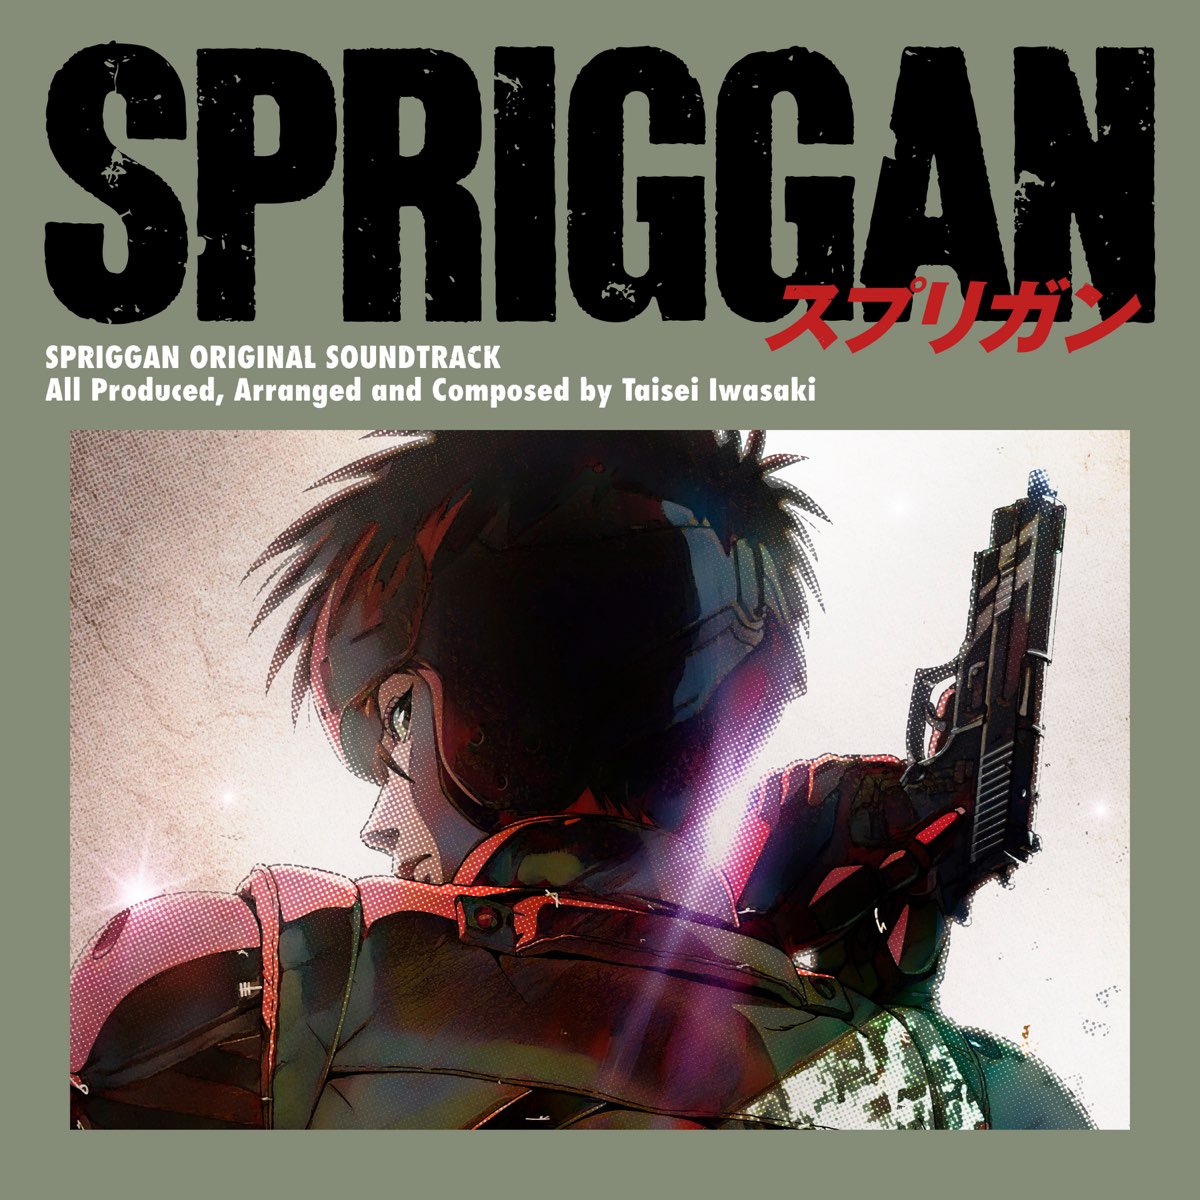 SPRIGGAN - Episodes Release Dates